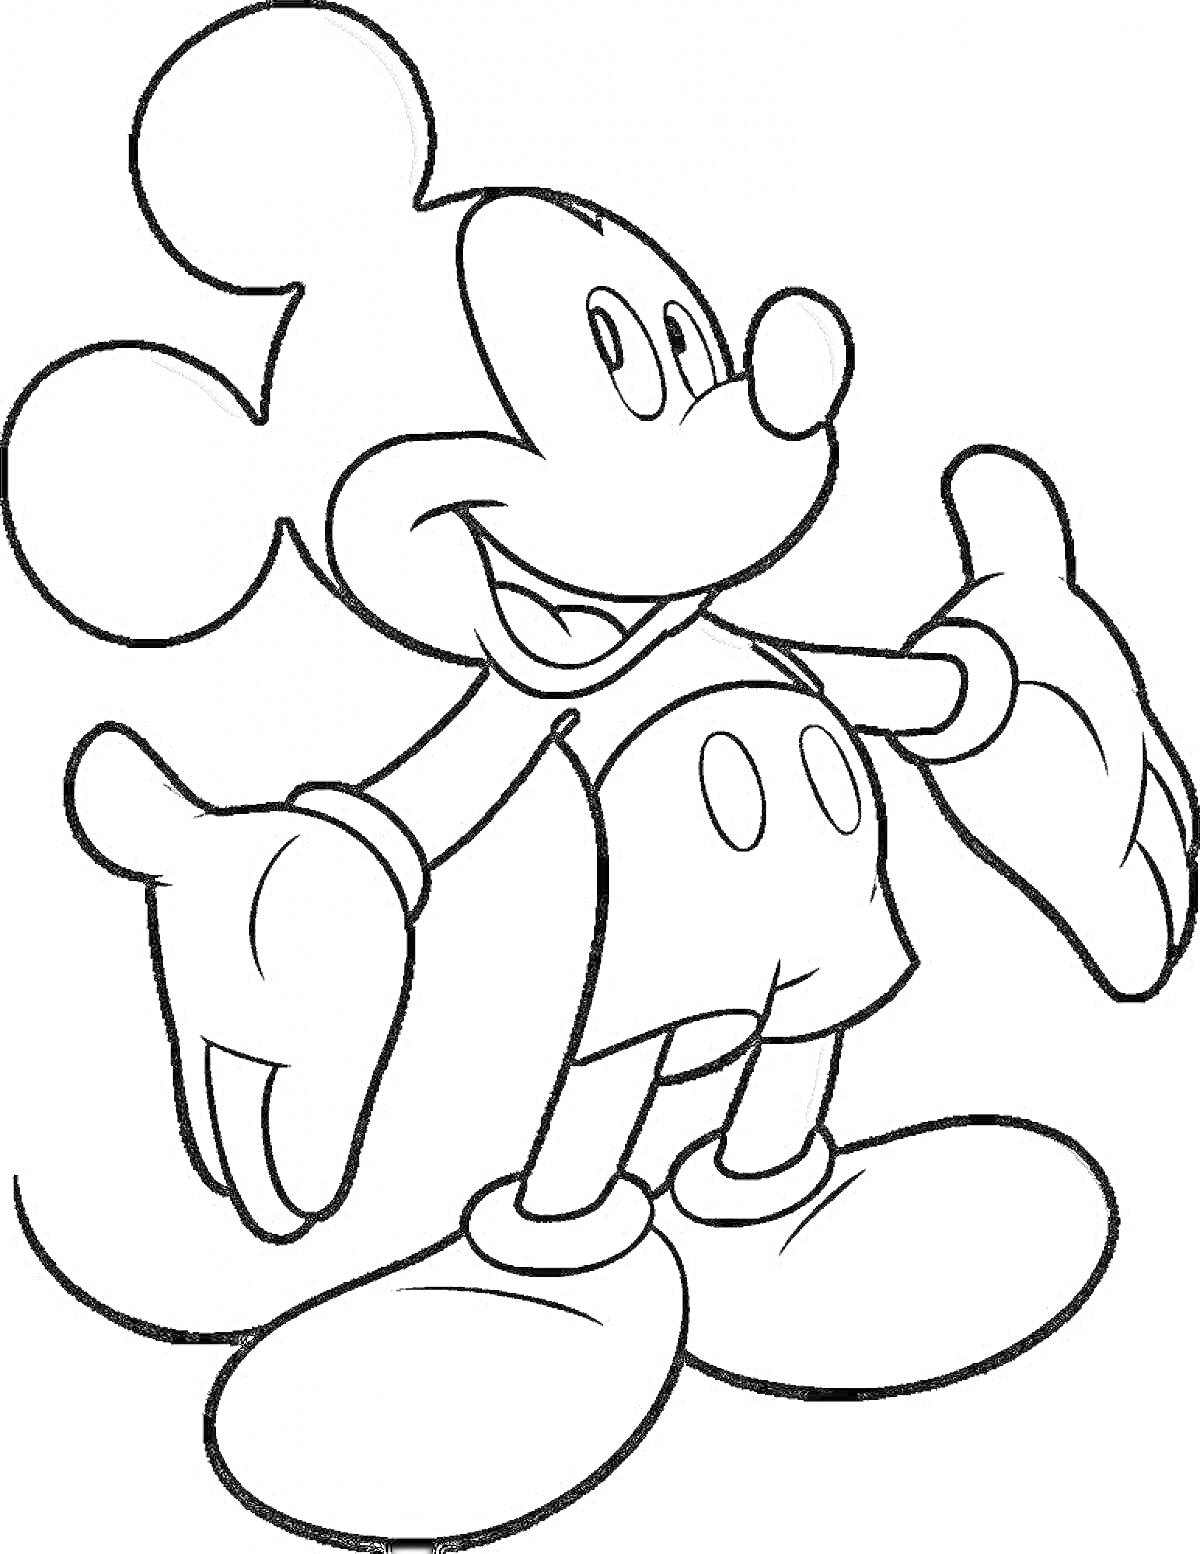 Раскраска Микки Маус с большими руками и ушами